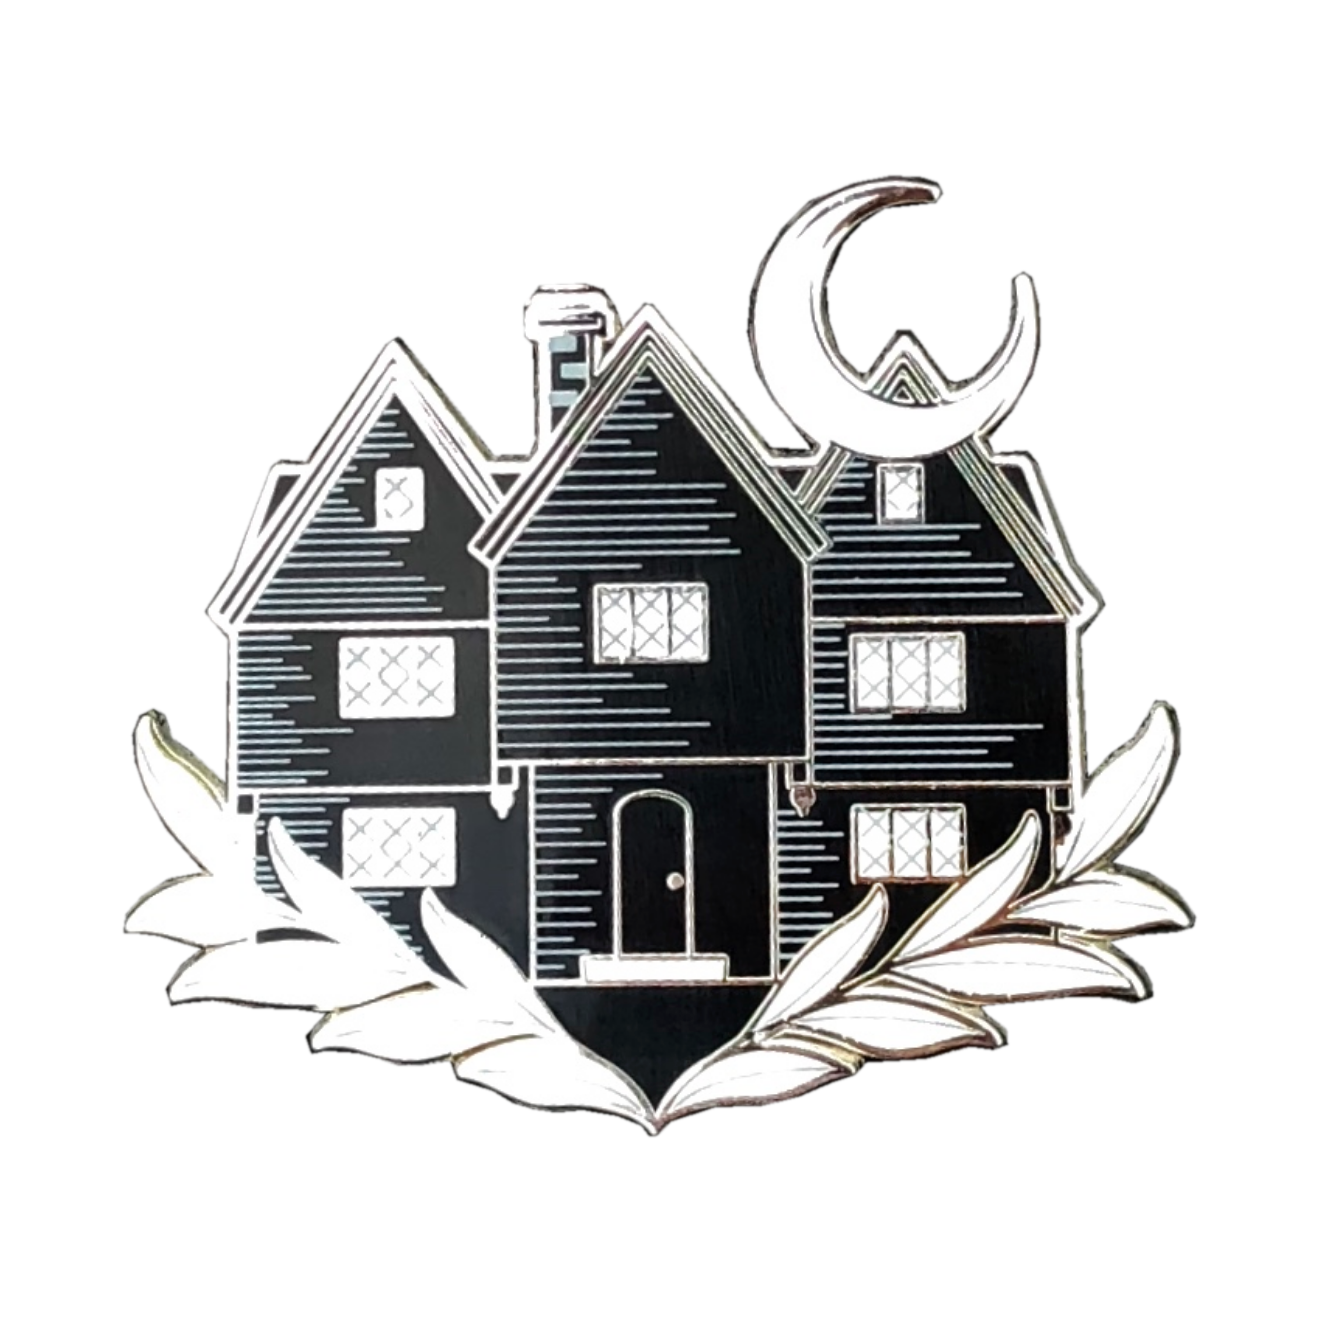 Salem Witch House Pin